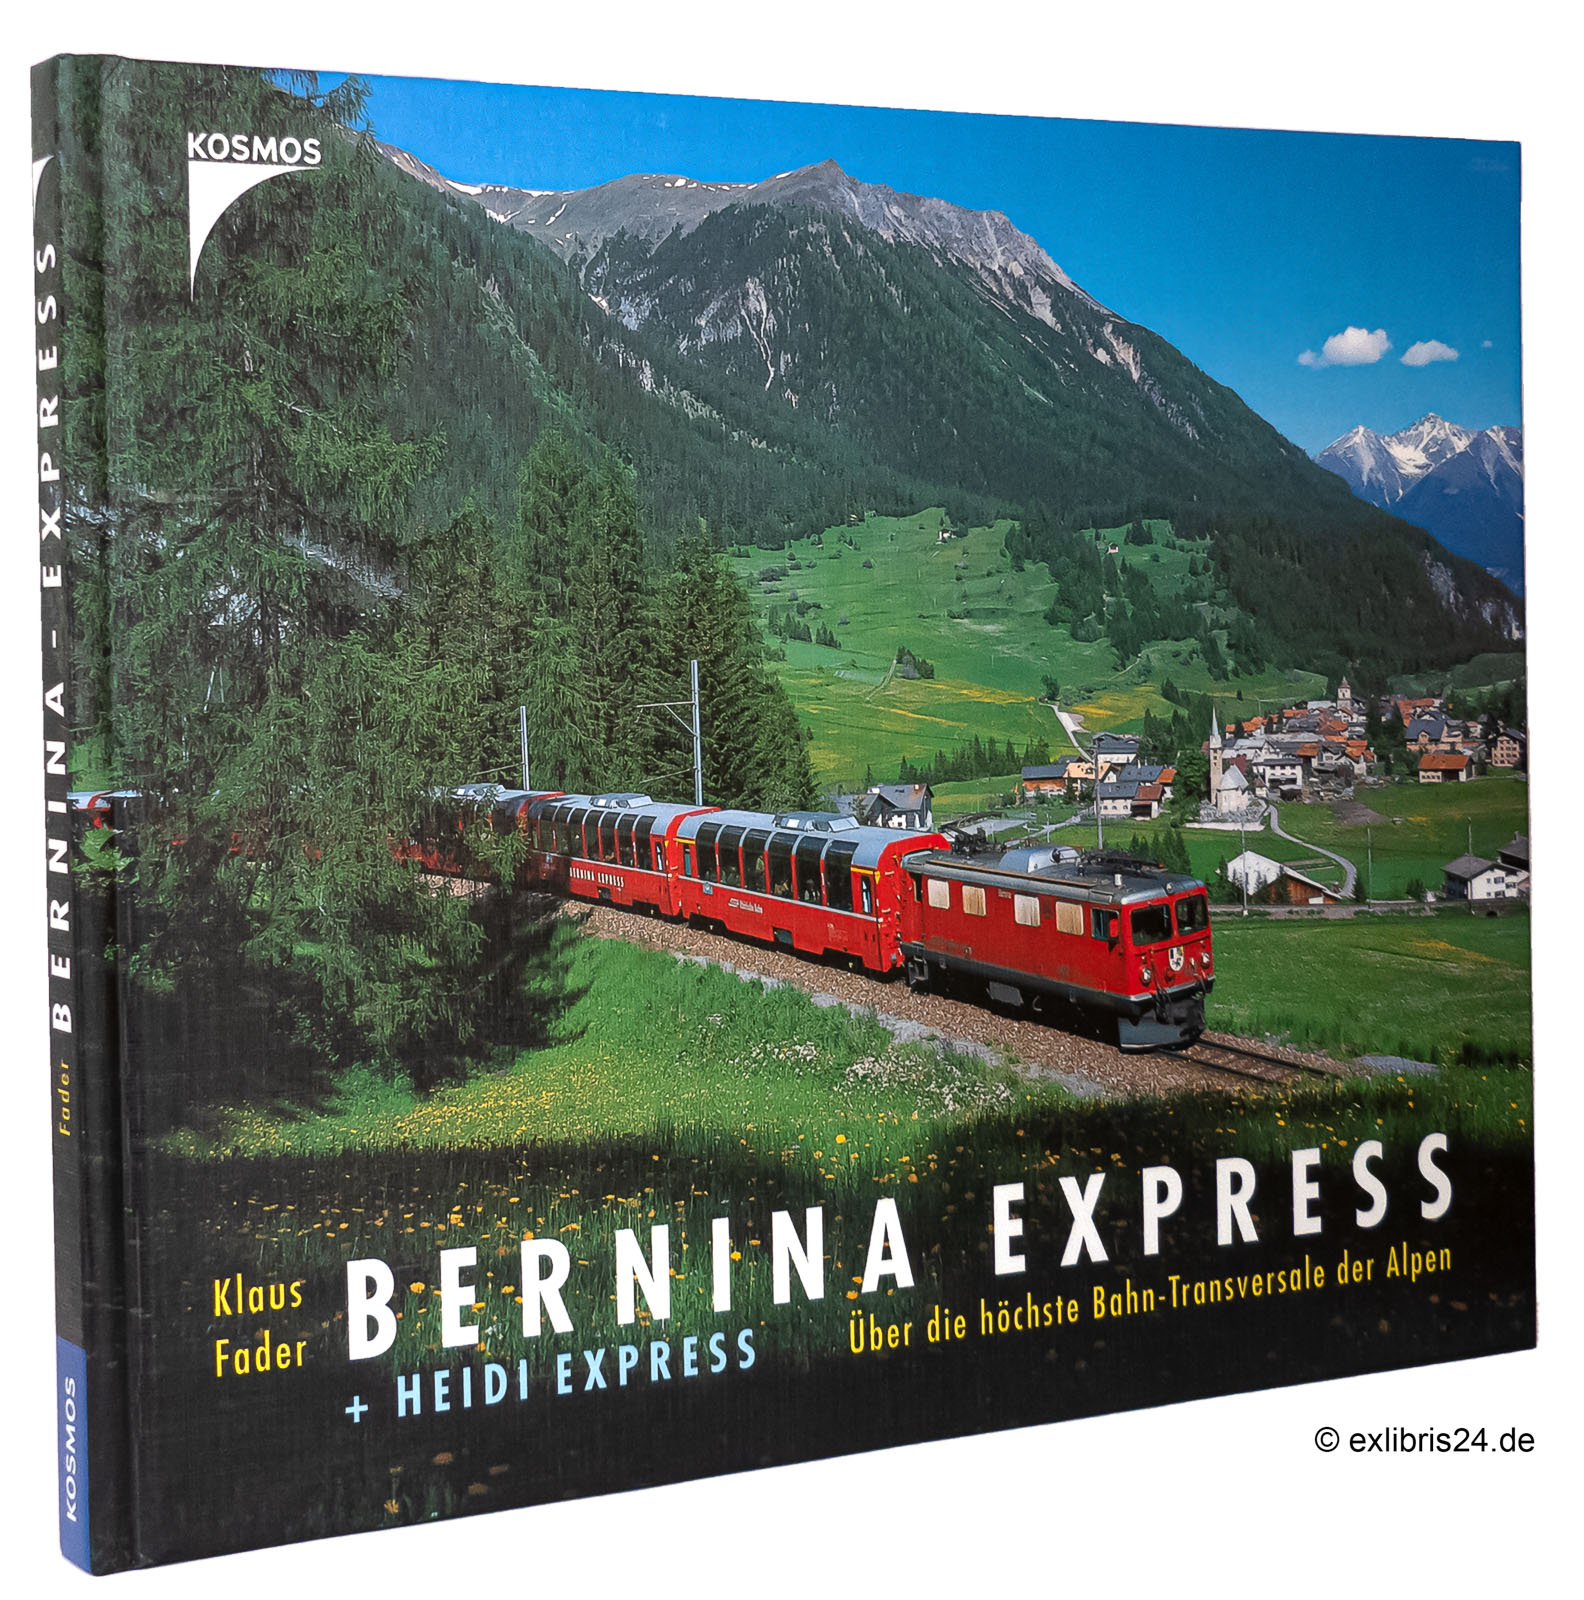 Bernina-Express + [und] Heidi-Express : Über die höchste Bahn-Transversale der Alpen - Fader, Klaus